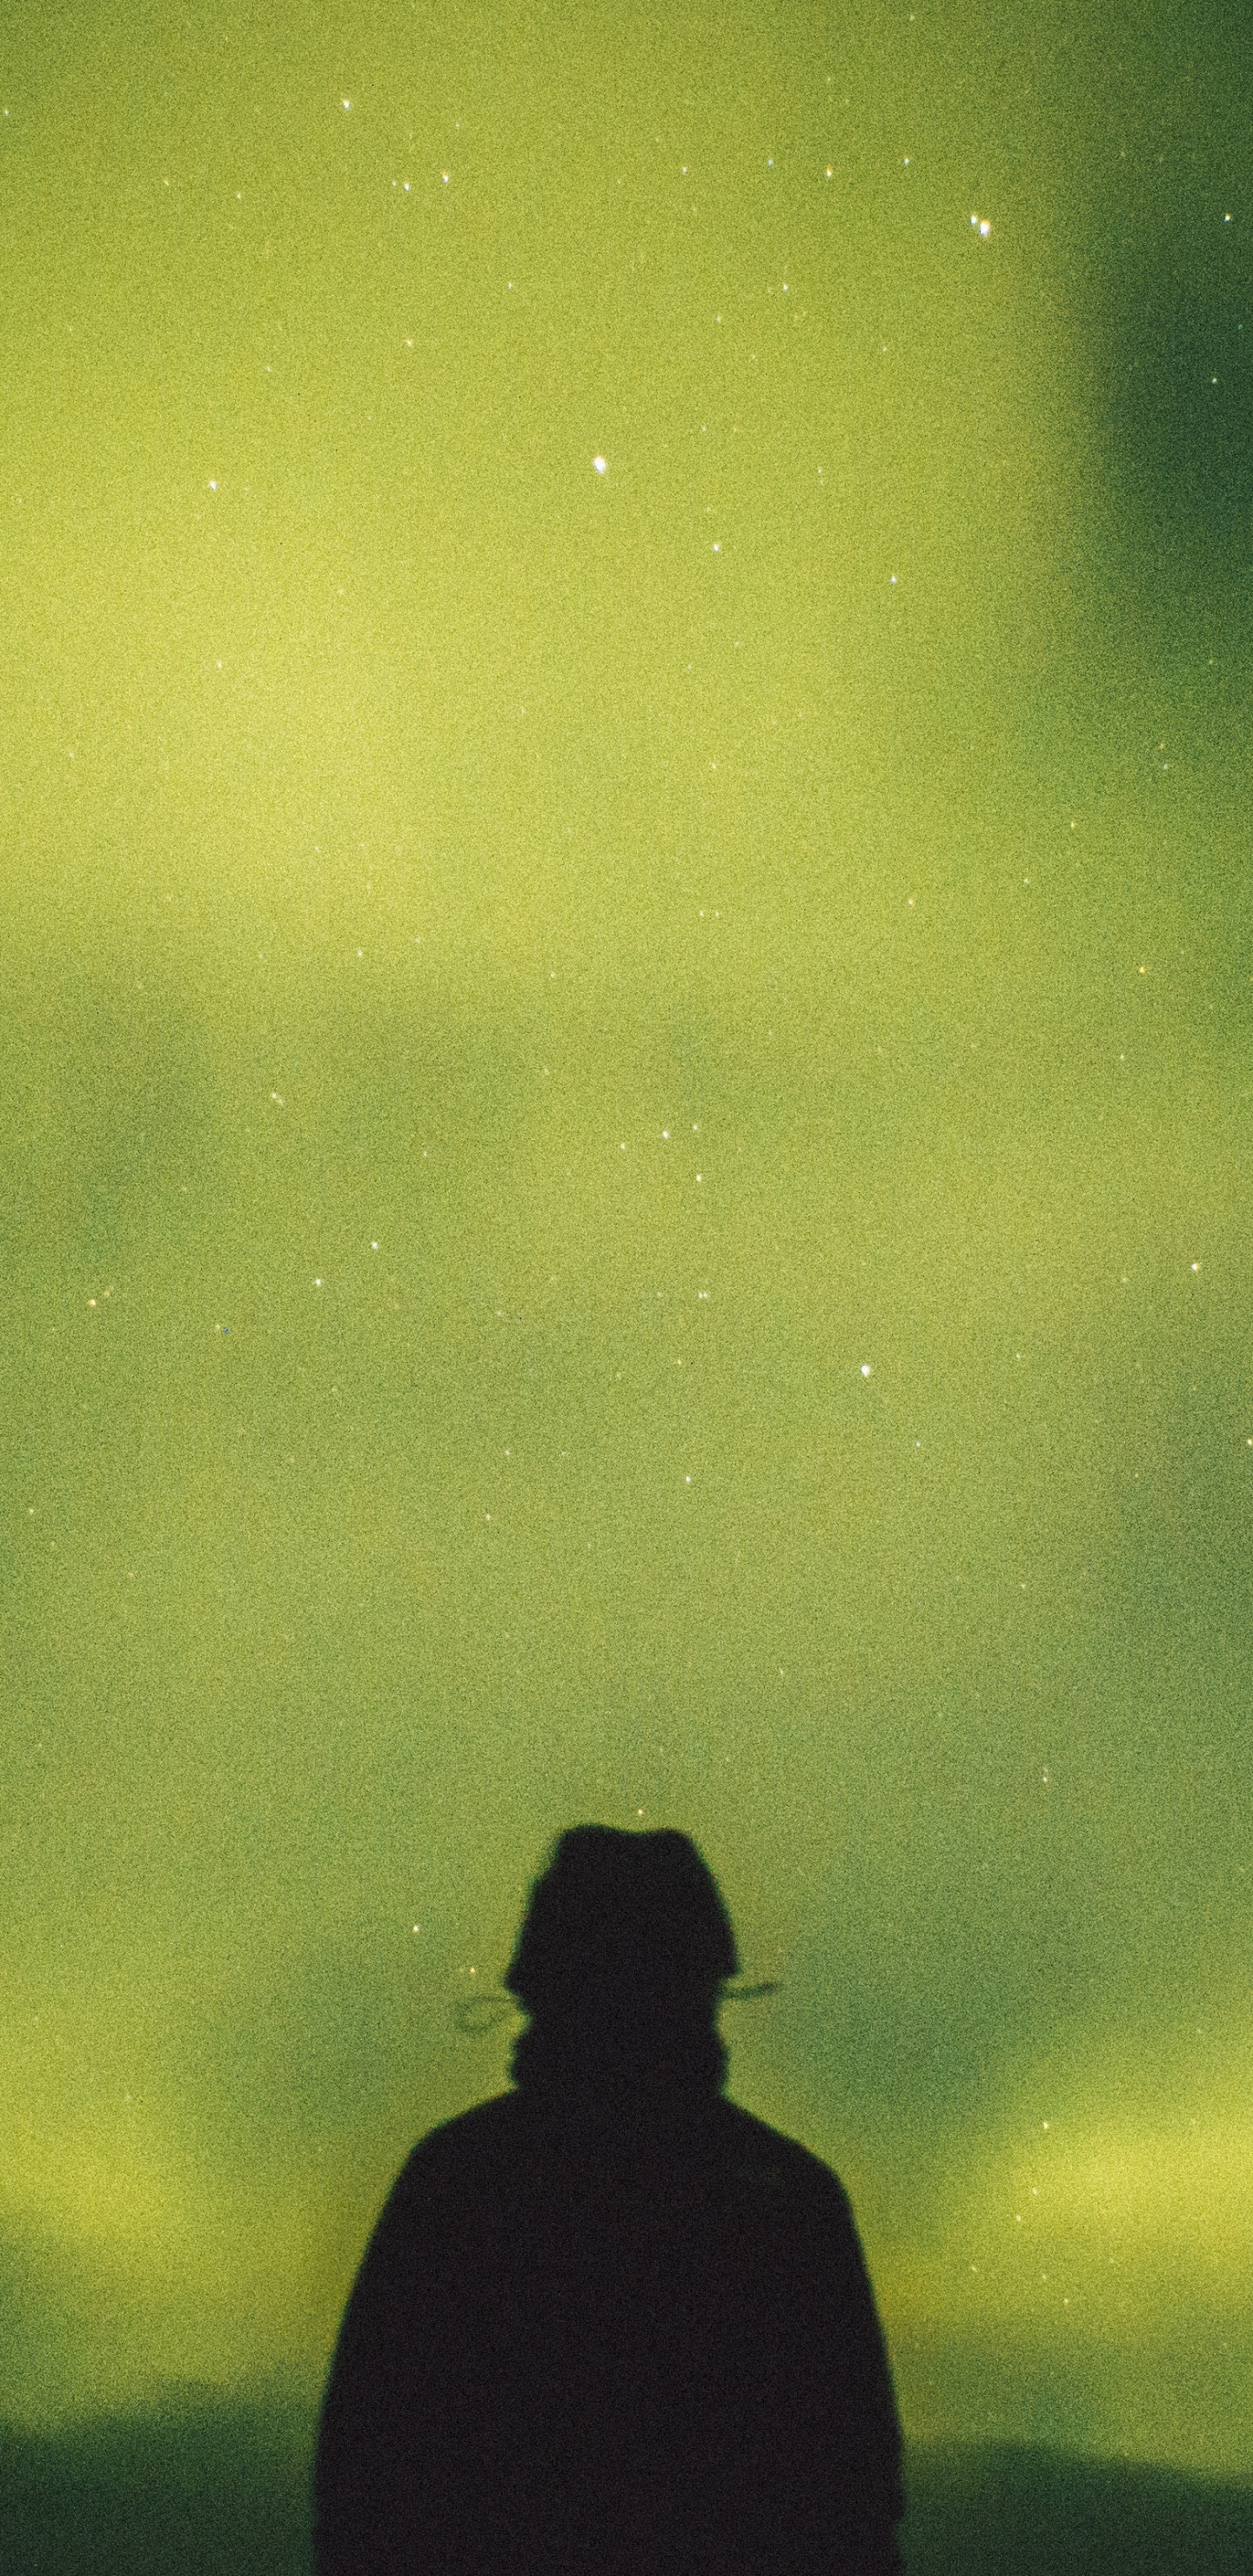 Silhouette D'homme Debout Sous un Ciel Gris. Wallpaper in 1440x2960 Resolution